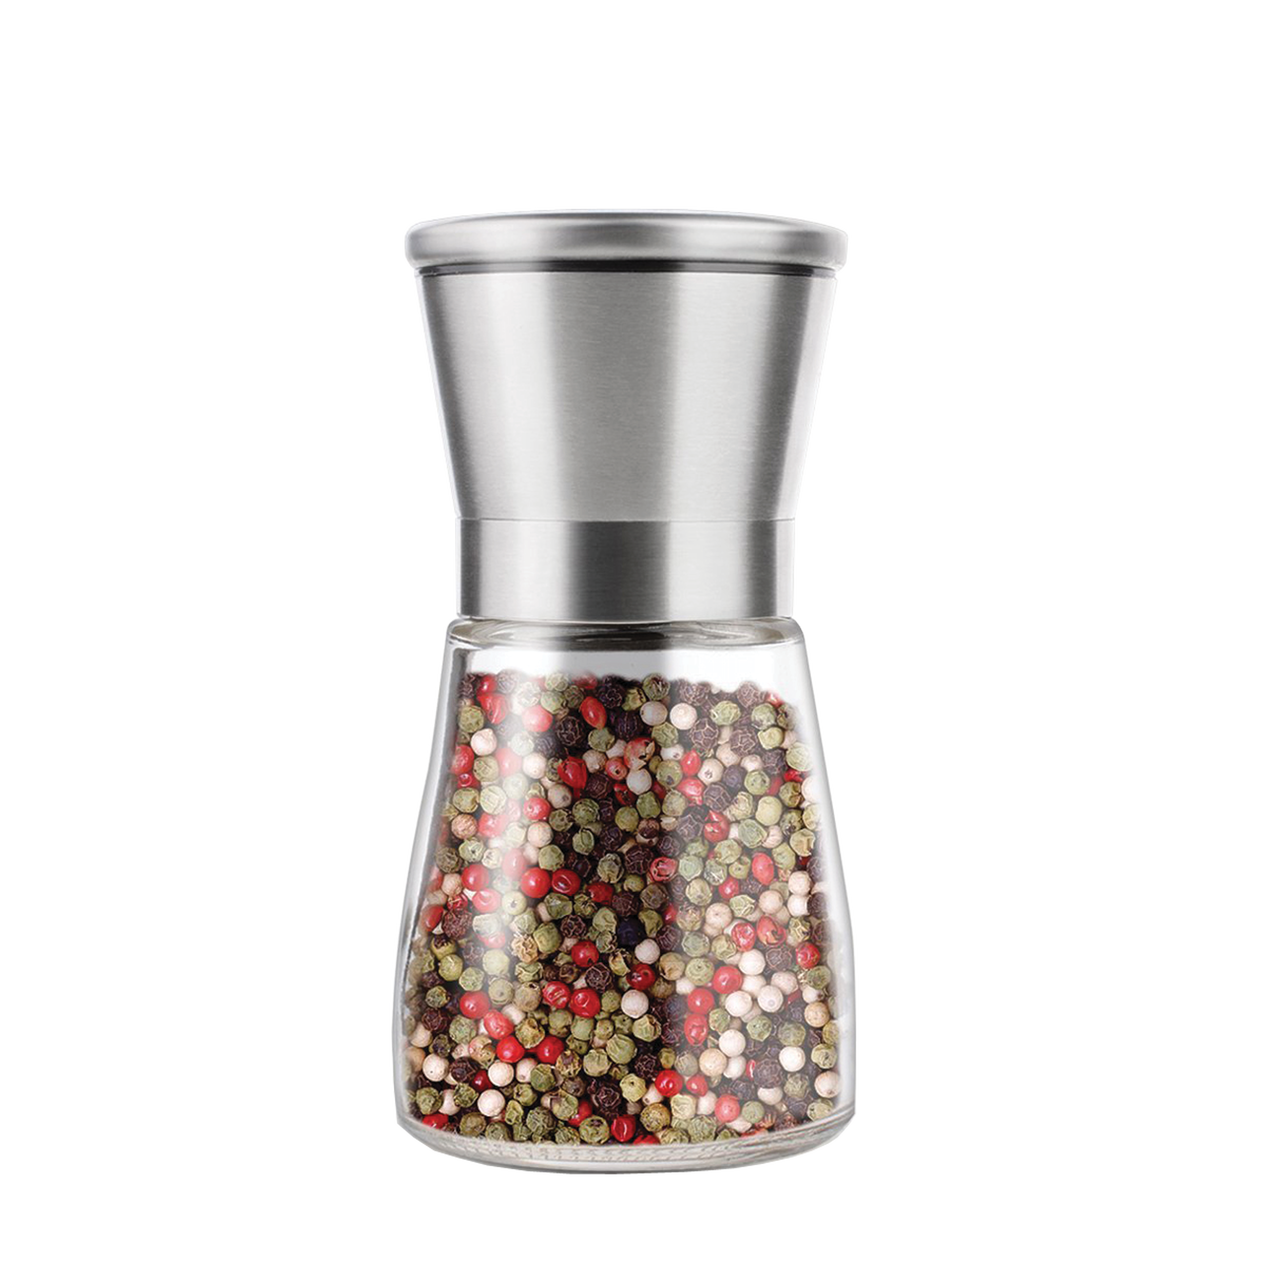 Salt and Pepper Grinder 2, Pepper Mill Stainless Steel Salt Shaker